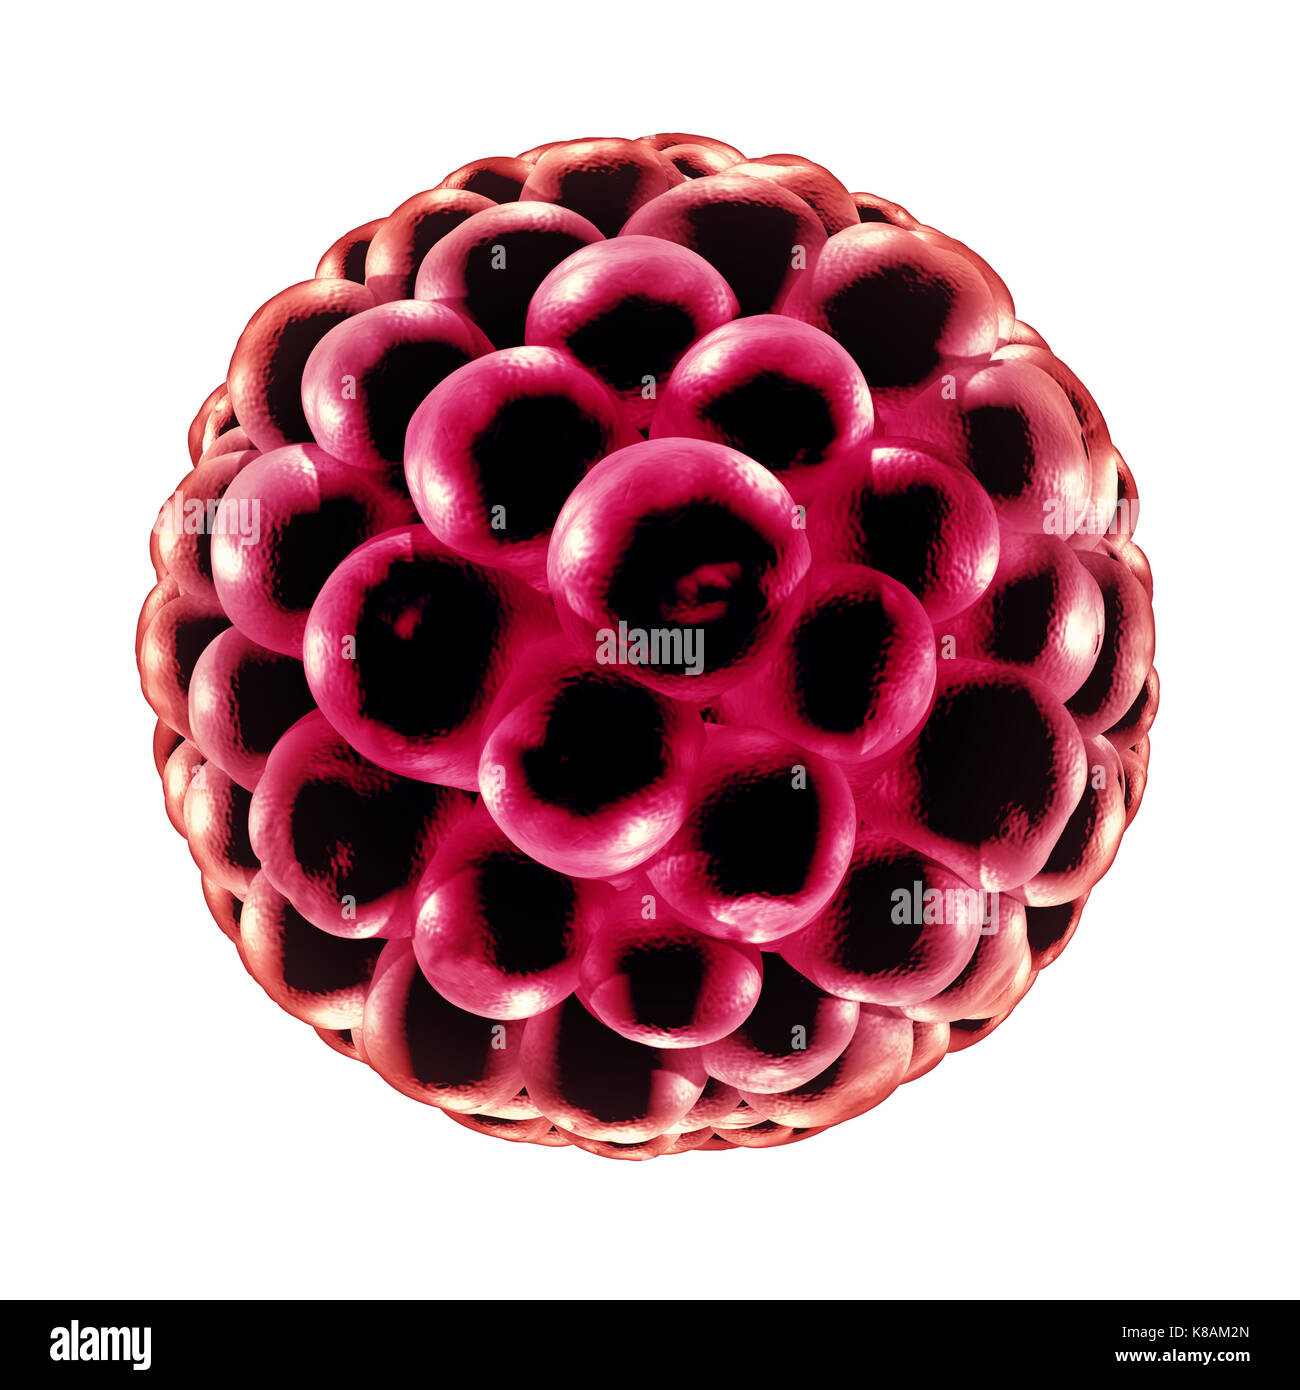 Blastocistos concepto médico de fertilización como una célula reproductiva división icono en anatomía de la reproducción como un símbolo de la fertilidad en 3D de una ilustración. Foto de stock